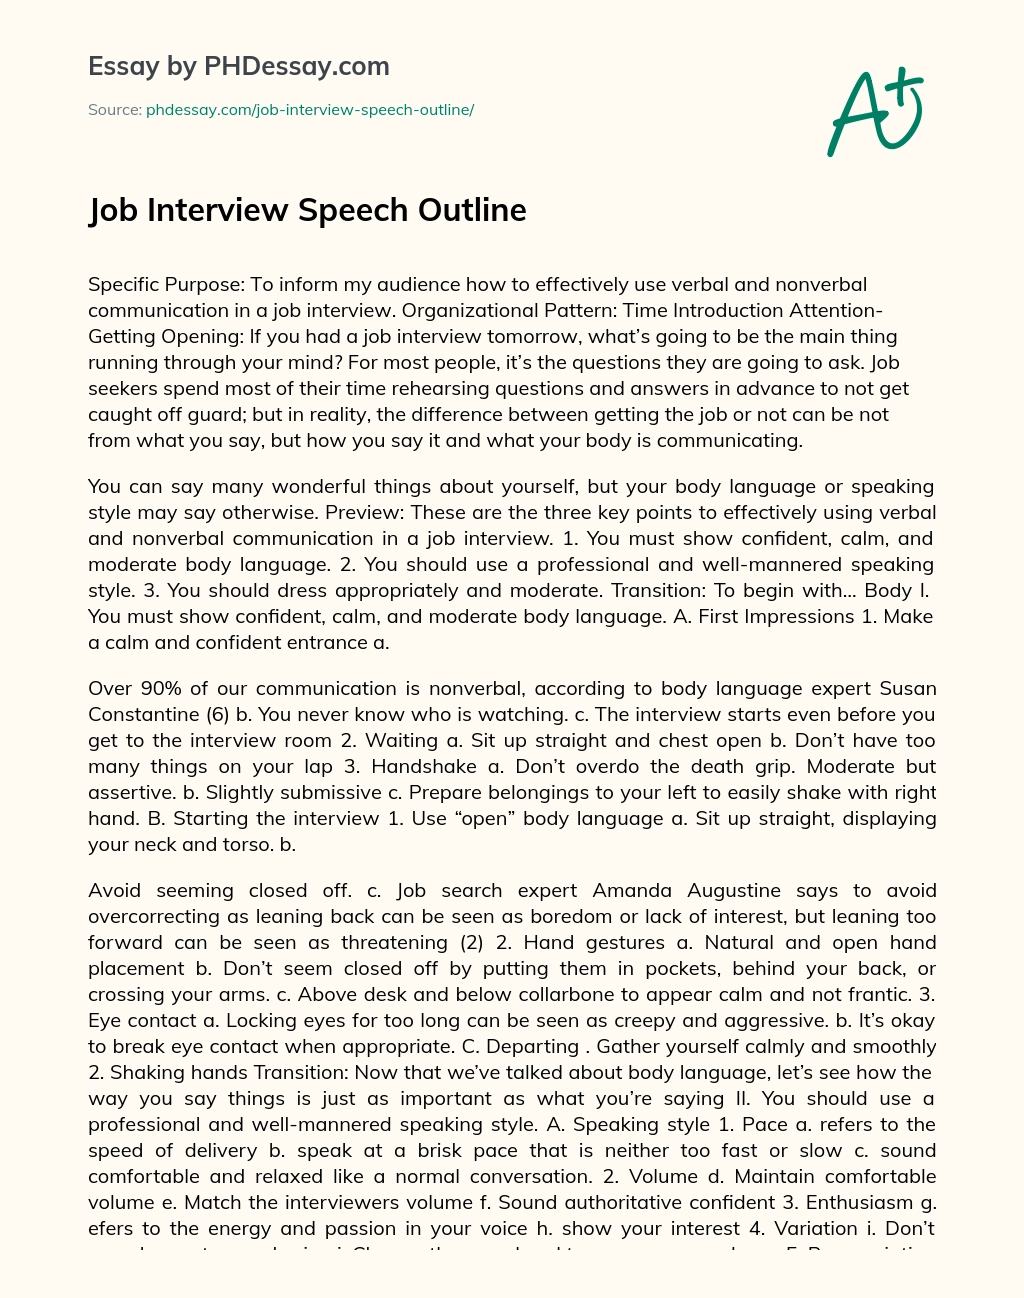 Job Interview Speech Outline essay